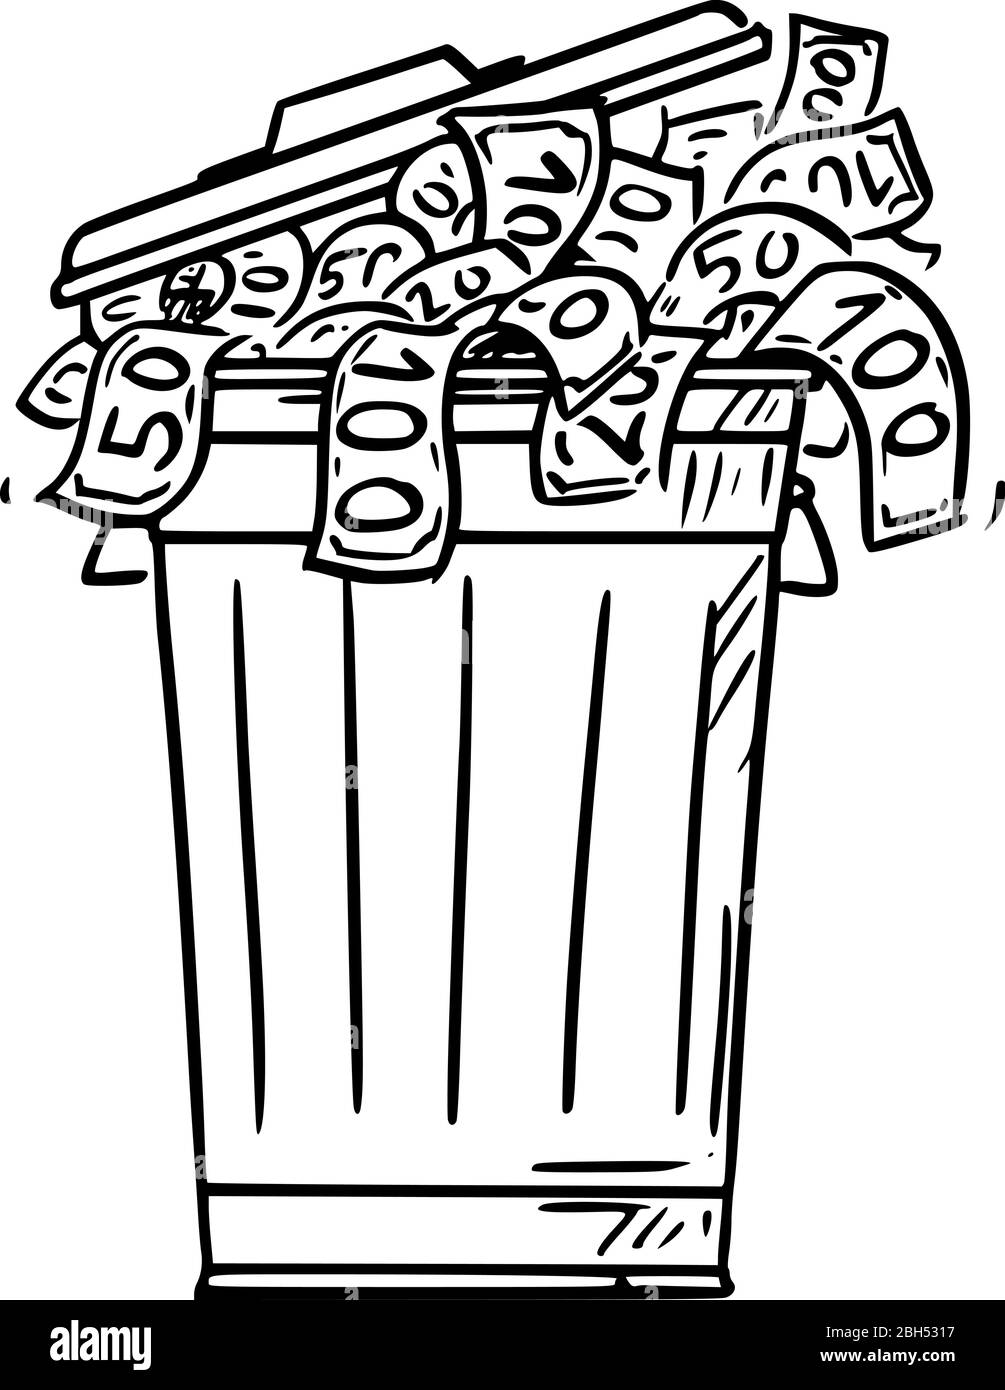 Figura del bastone del cartoon del vettore che disegna l'illustrazione concettuale di bidone della spazzatura, della latta della spazzatura o del bidone del wheelie pieno delle fatture di soldi di contanti gettate come spreco. Illustrazione Vettoriale